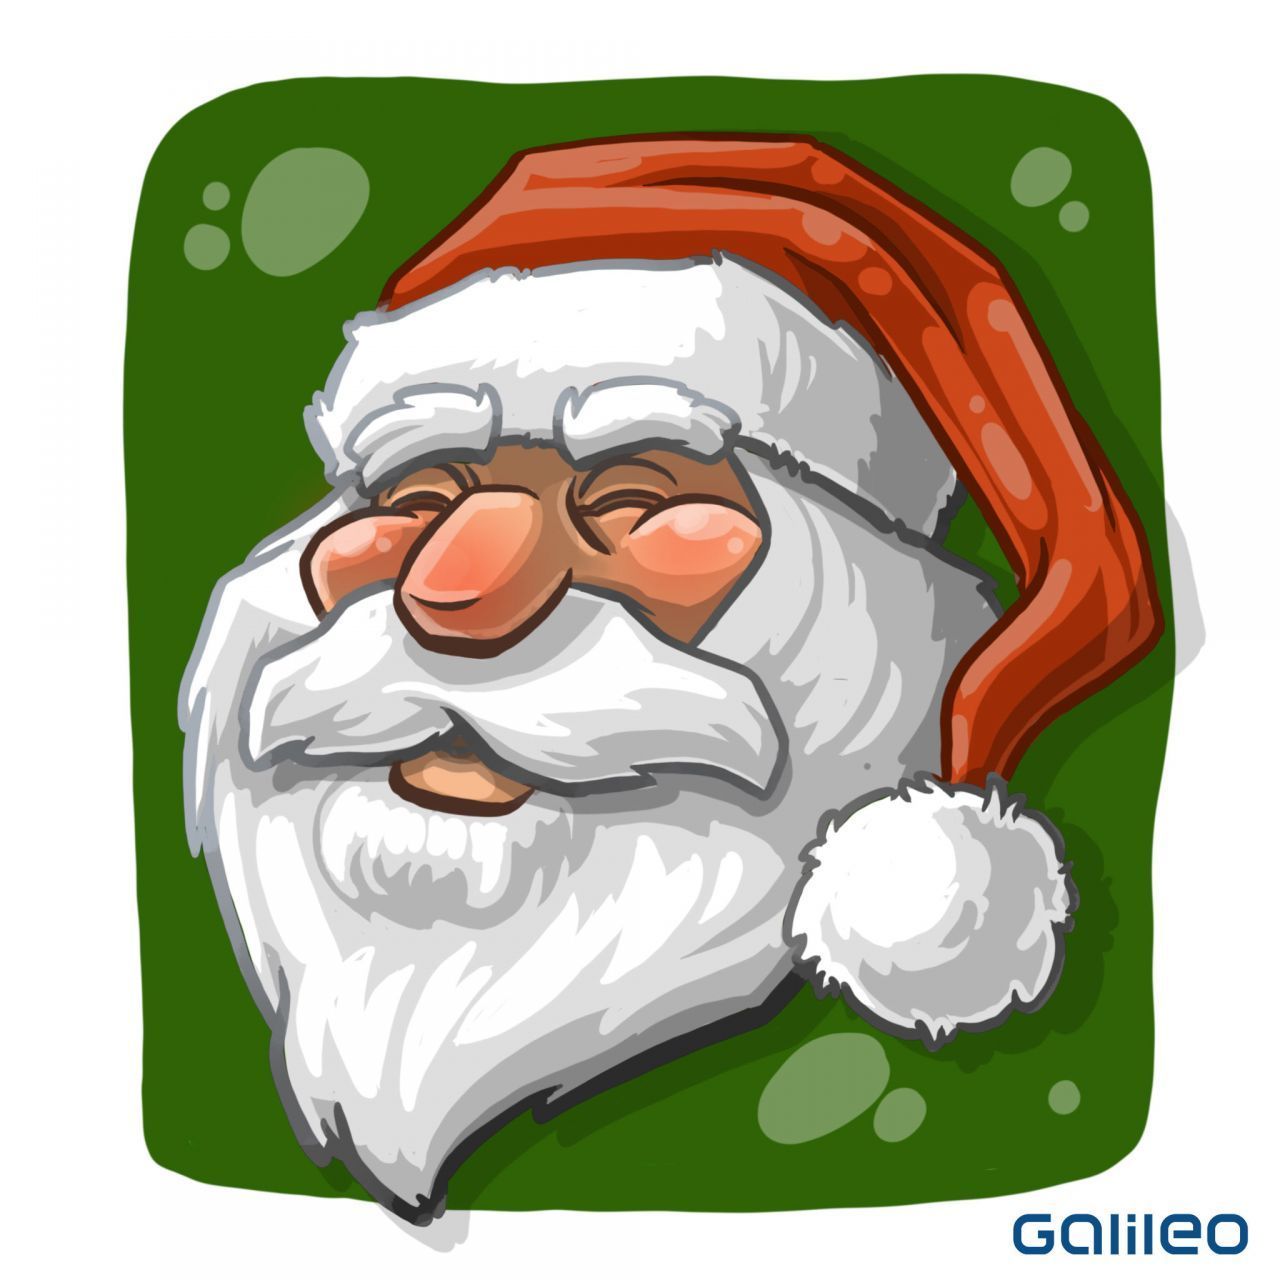 Weißer Rauschebart, rotes Gewand, liebes Gesicht - den Weihnachtsmann, wie wir ihn heute kennen, wurde besonders stark Anfang der 30er-Jahre geprägt. Hinter "Santa Claus" verbirgt sich der Heilige Nikolaus in einer glanzvolleren Aufmache. Er inspirierte den Konzern zu seiner Weihnachts-Werbung.